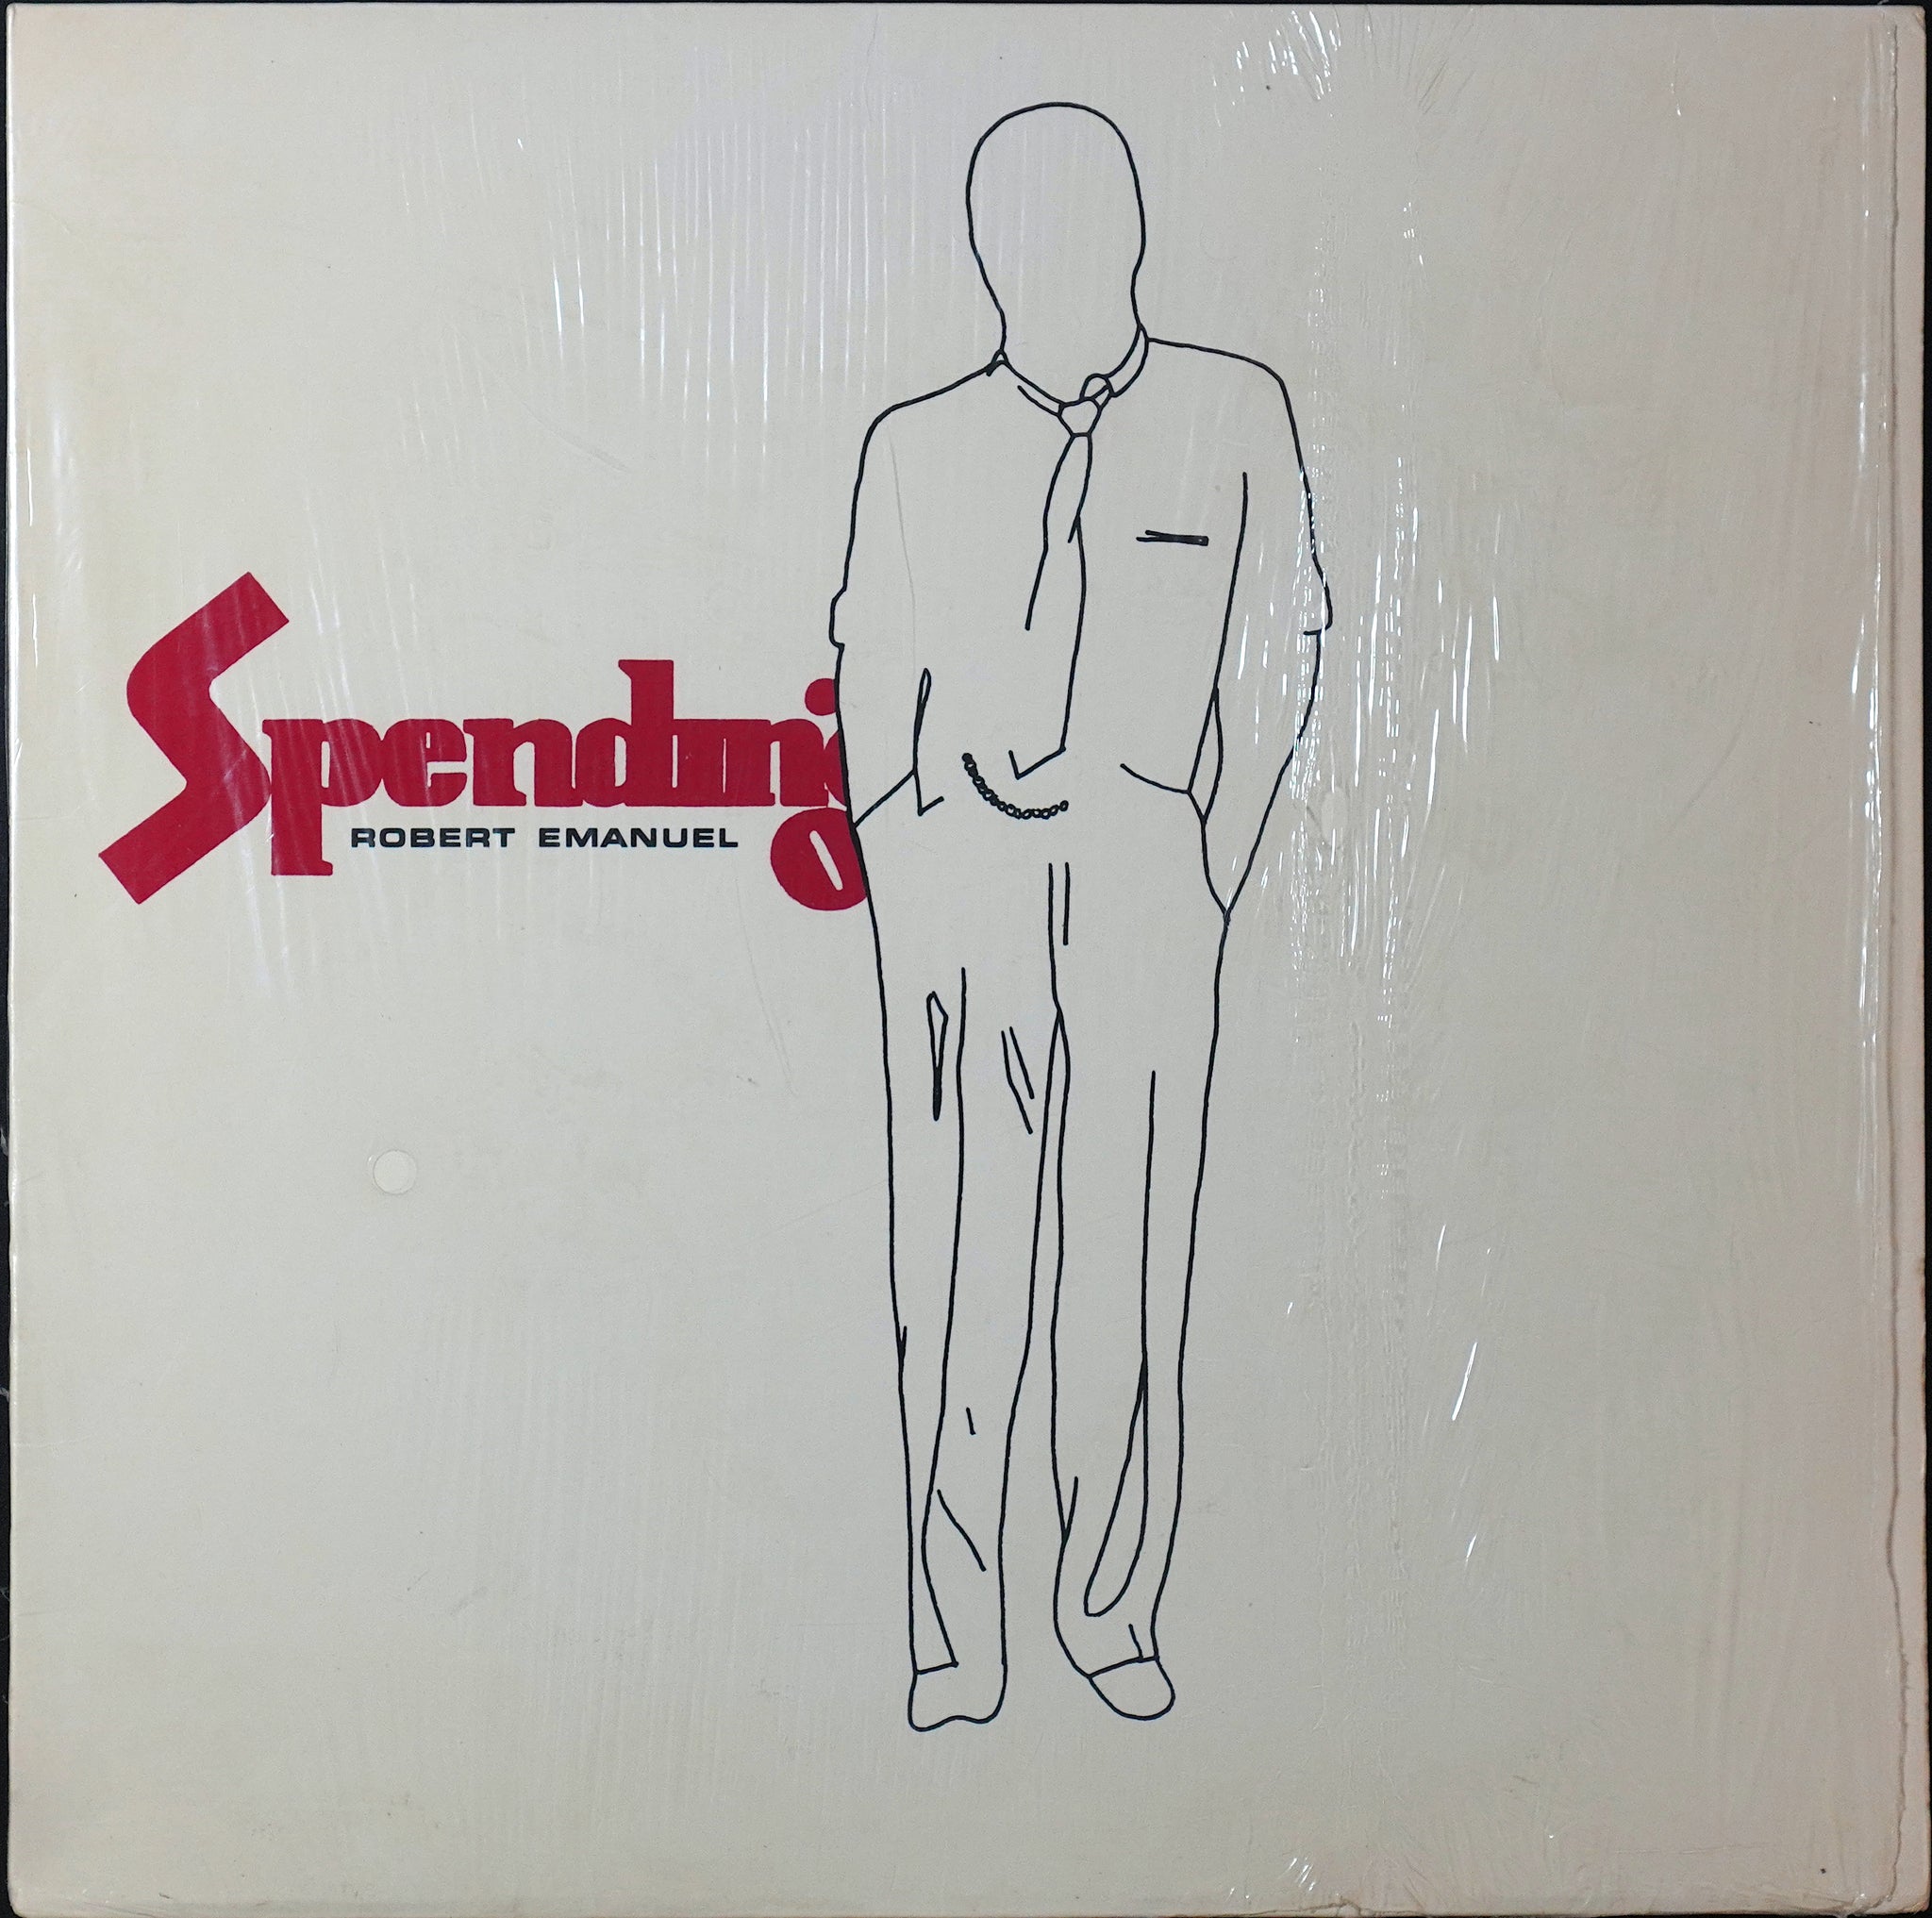 Robert Emanuel - Spending (LP)